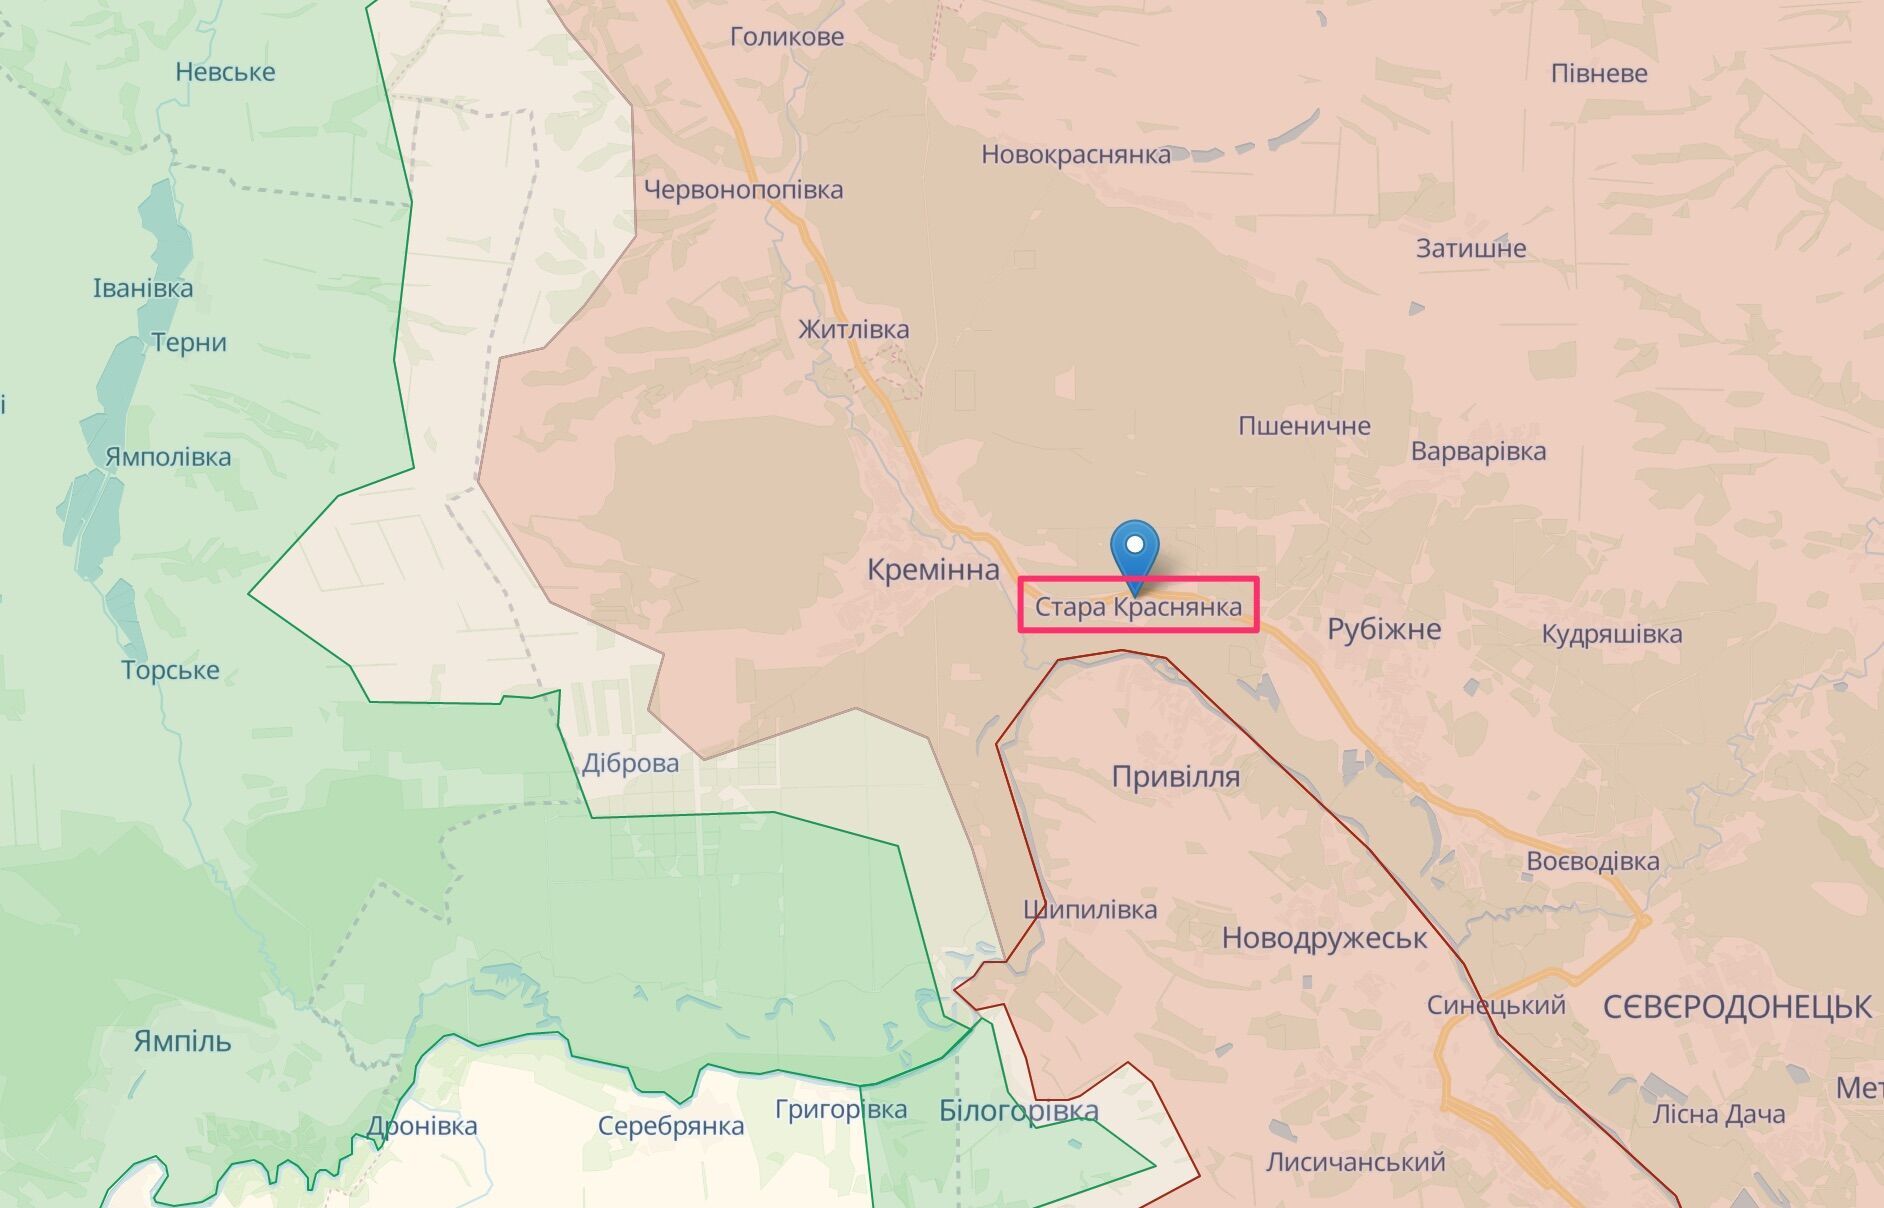 Направления неудачных атак врага в Луганской области